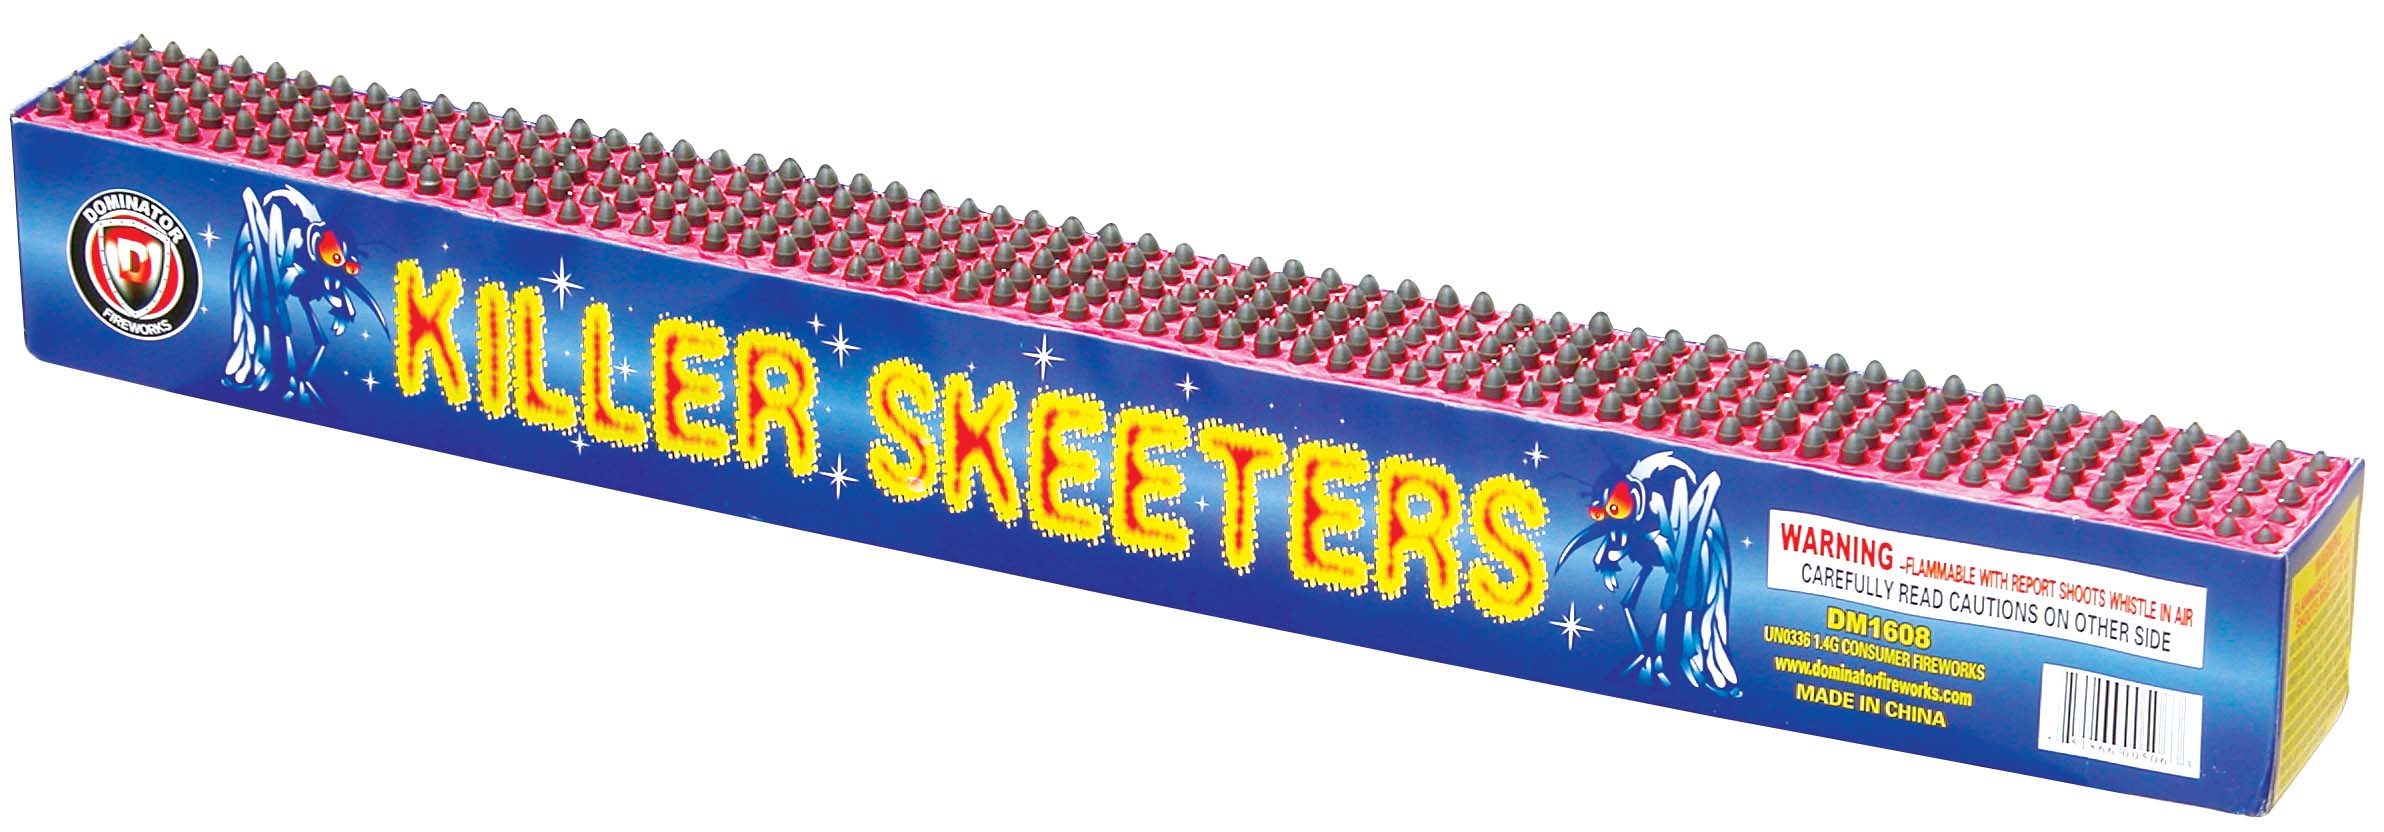 300 Shot Killer Skeeters